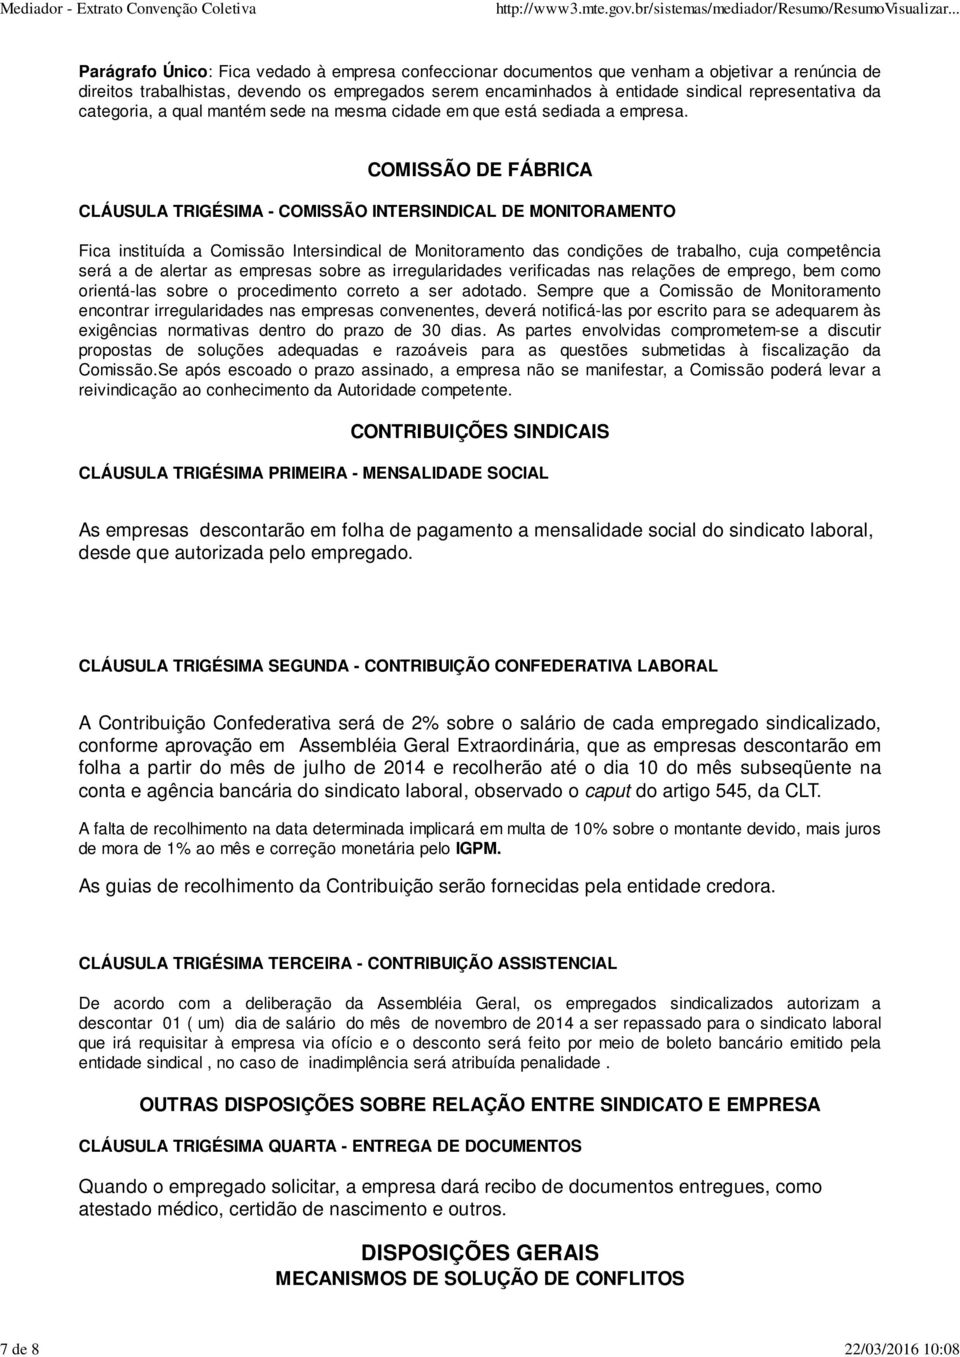 COMISSÃO DE FÁBRICA CLÁUSULA TRIGÉSIMA - COMISSÃO INTERSINDICAL DE MONITORAMENTO Fica instituída a Comissão Intersindical de Monitoramento das condições de trabalho, cuja competência será a de